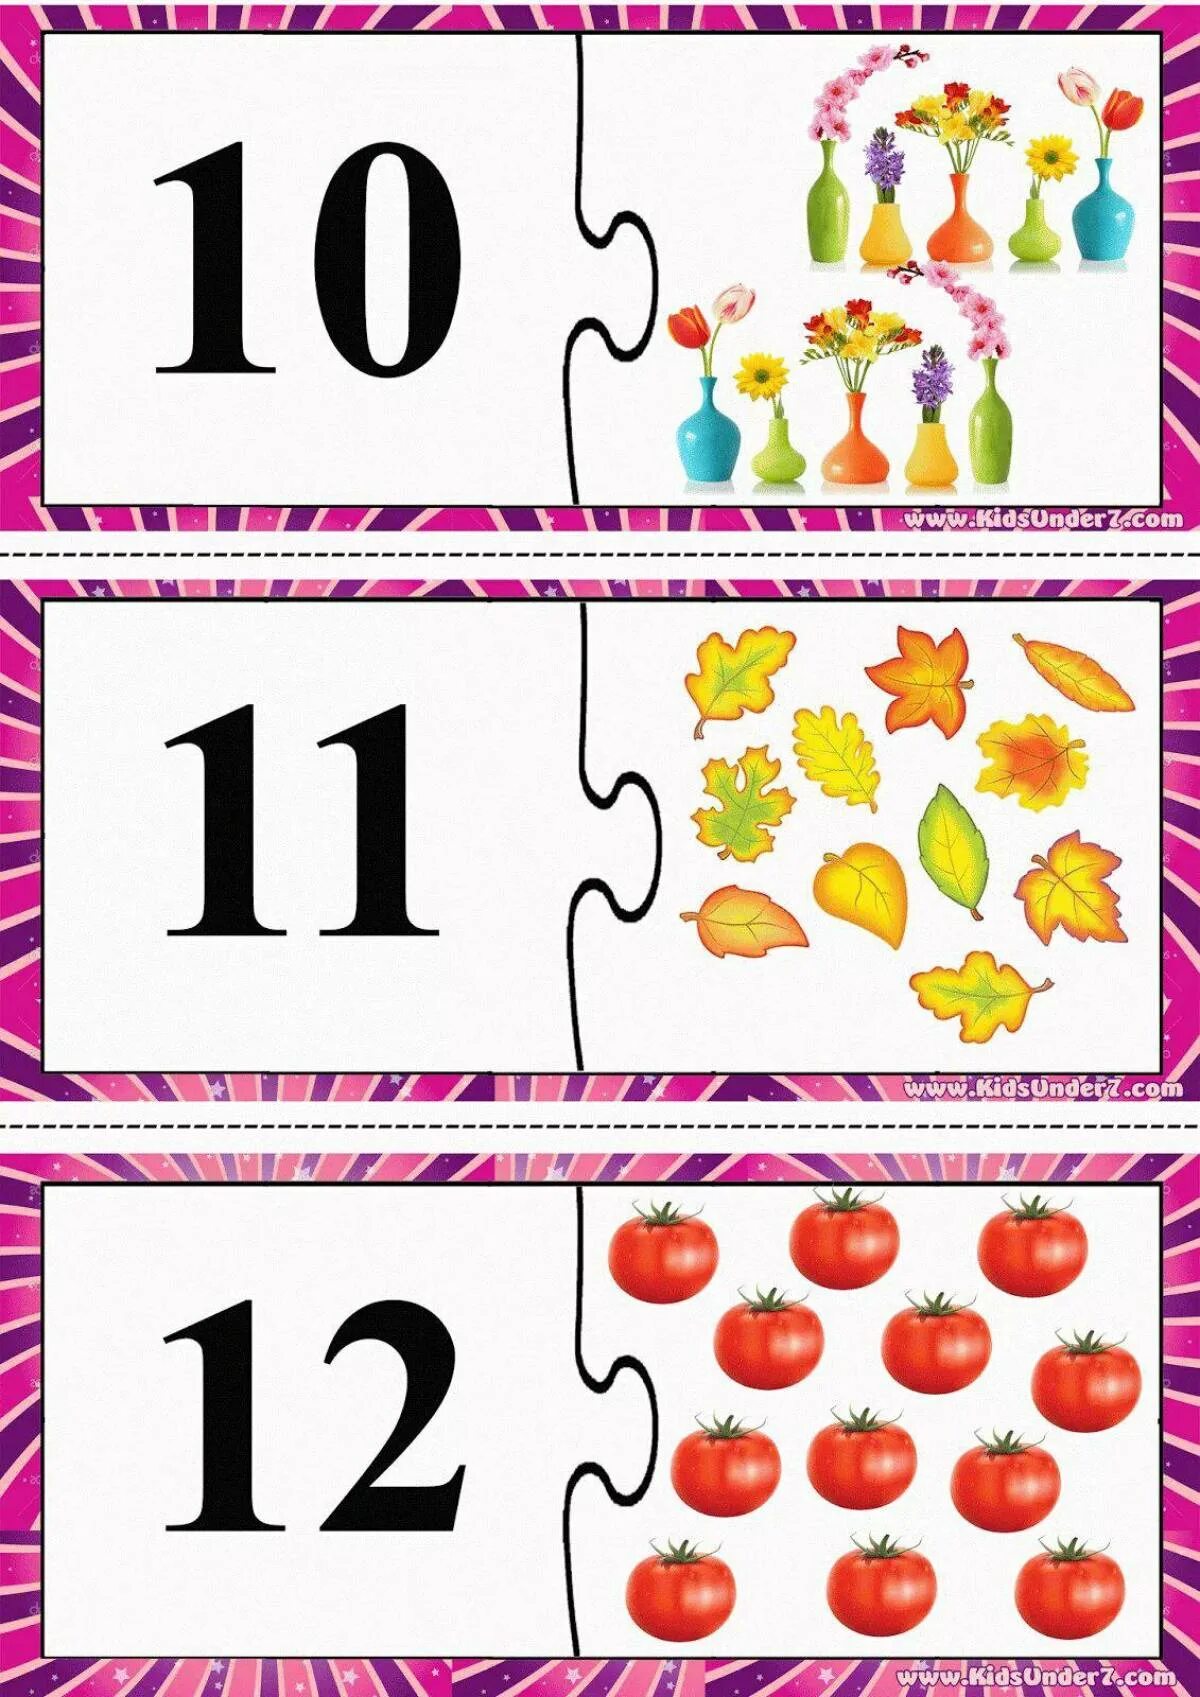 Счета 12 13. Карточки для изучения цифр для детей. Карточки с цифрами и предметами. Математические карточки с цифрами. Пазлы цифры для детей.